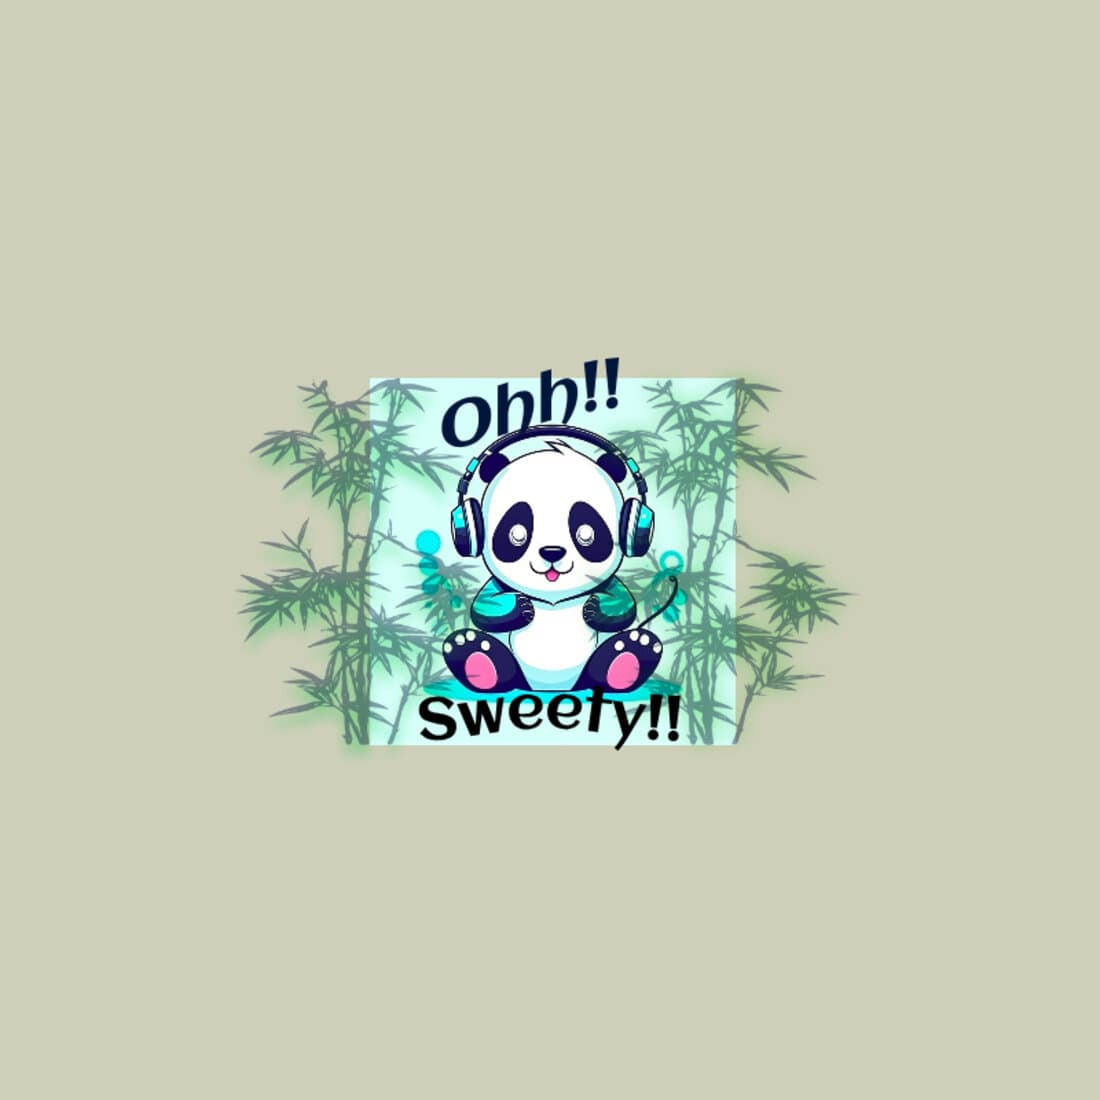 Cute panda preview image.